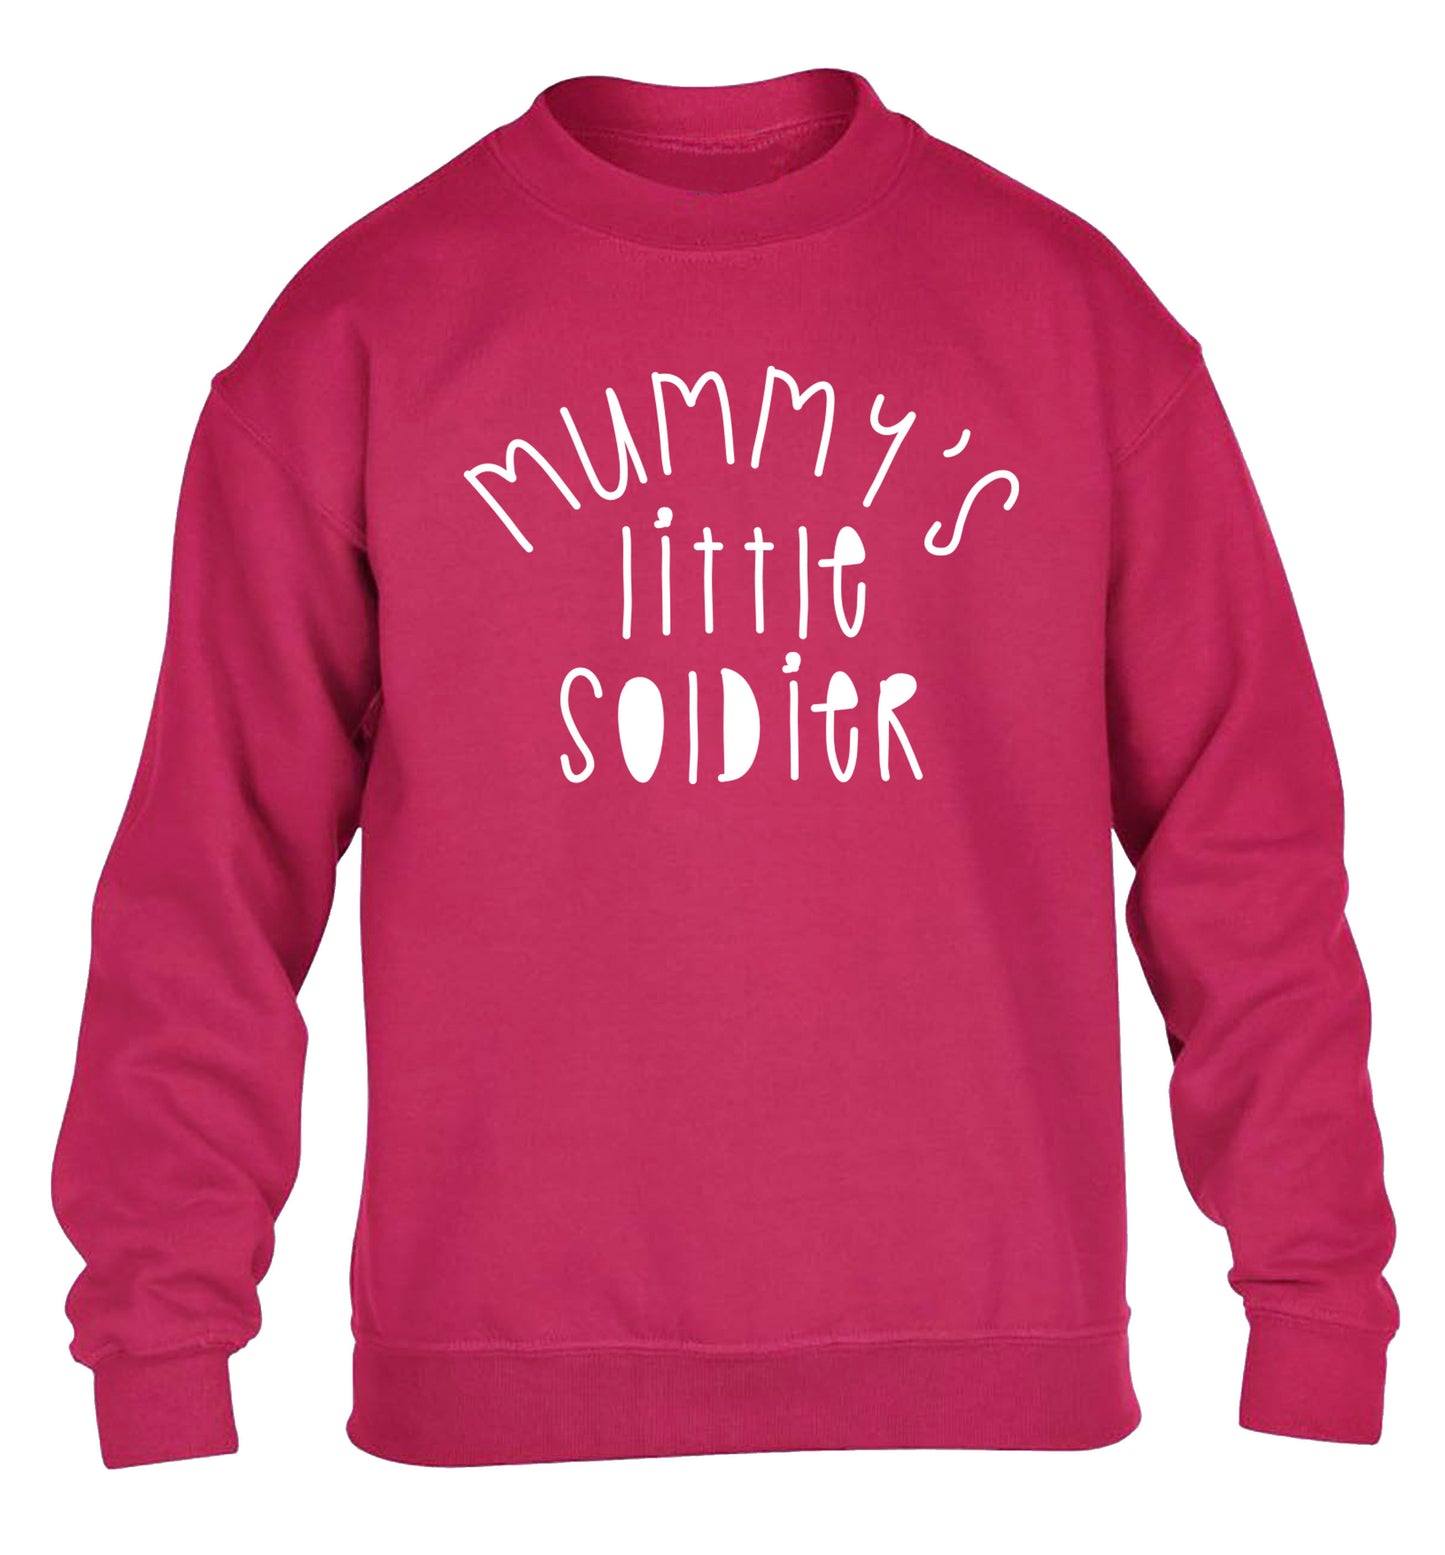 Mummy's little soldier children's pink sweater 12-14 Years